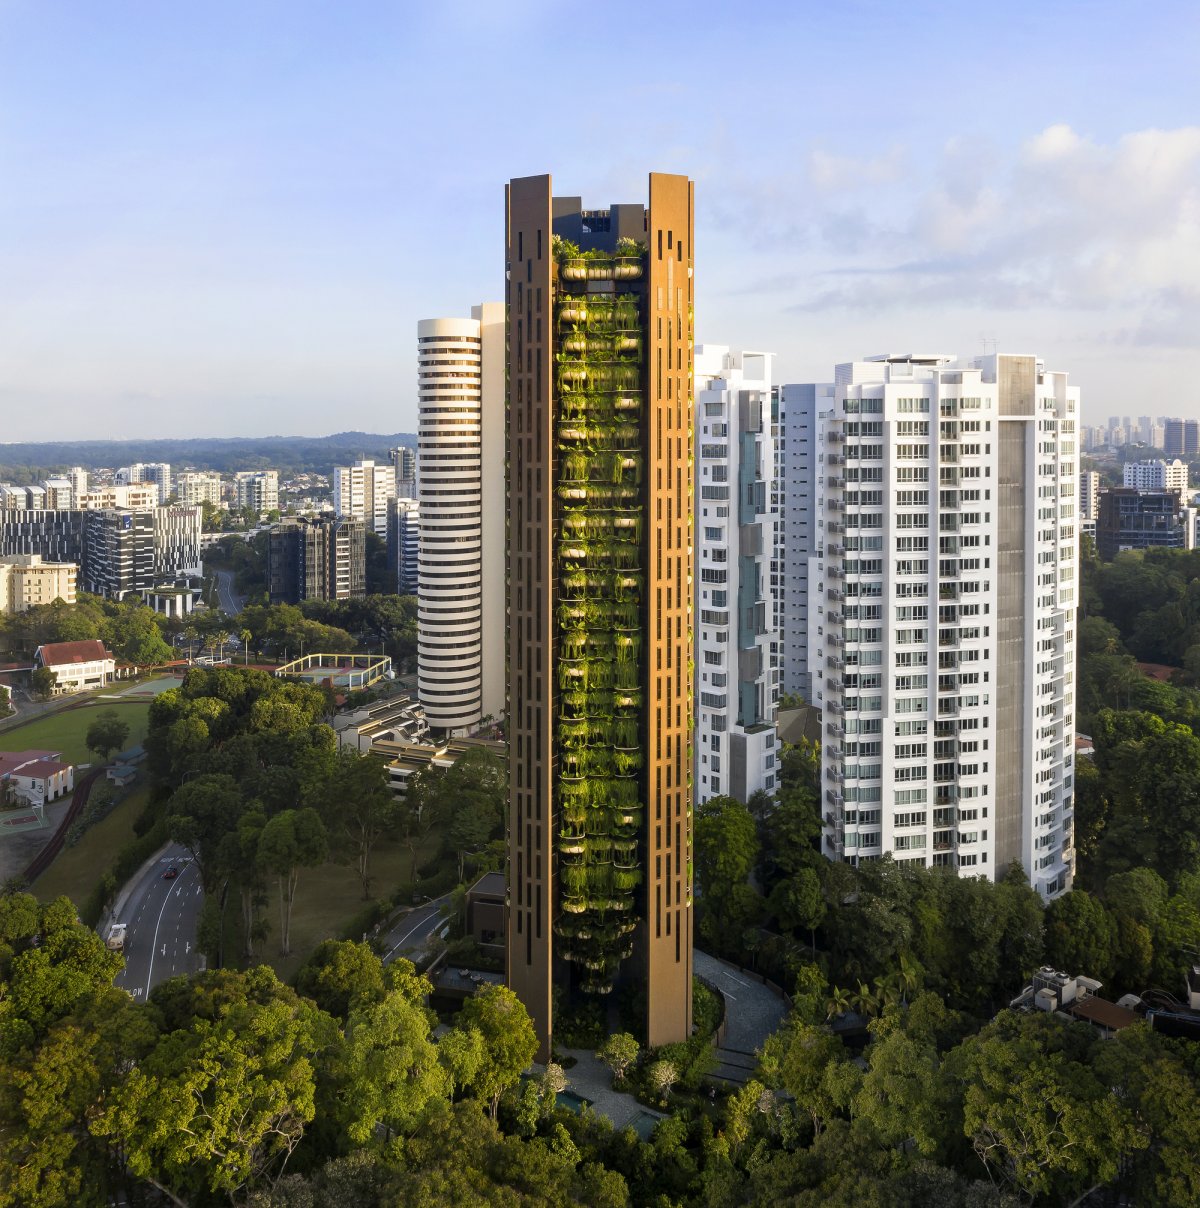 新加坡超豪华住宅大厦eden由著名建筑师thomas heatherwick与太古物业